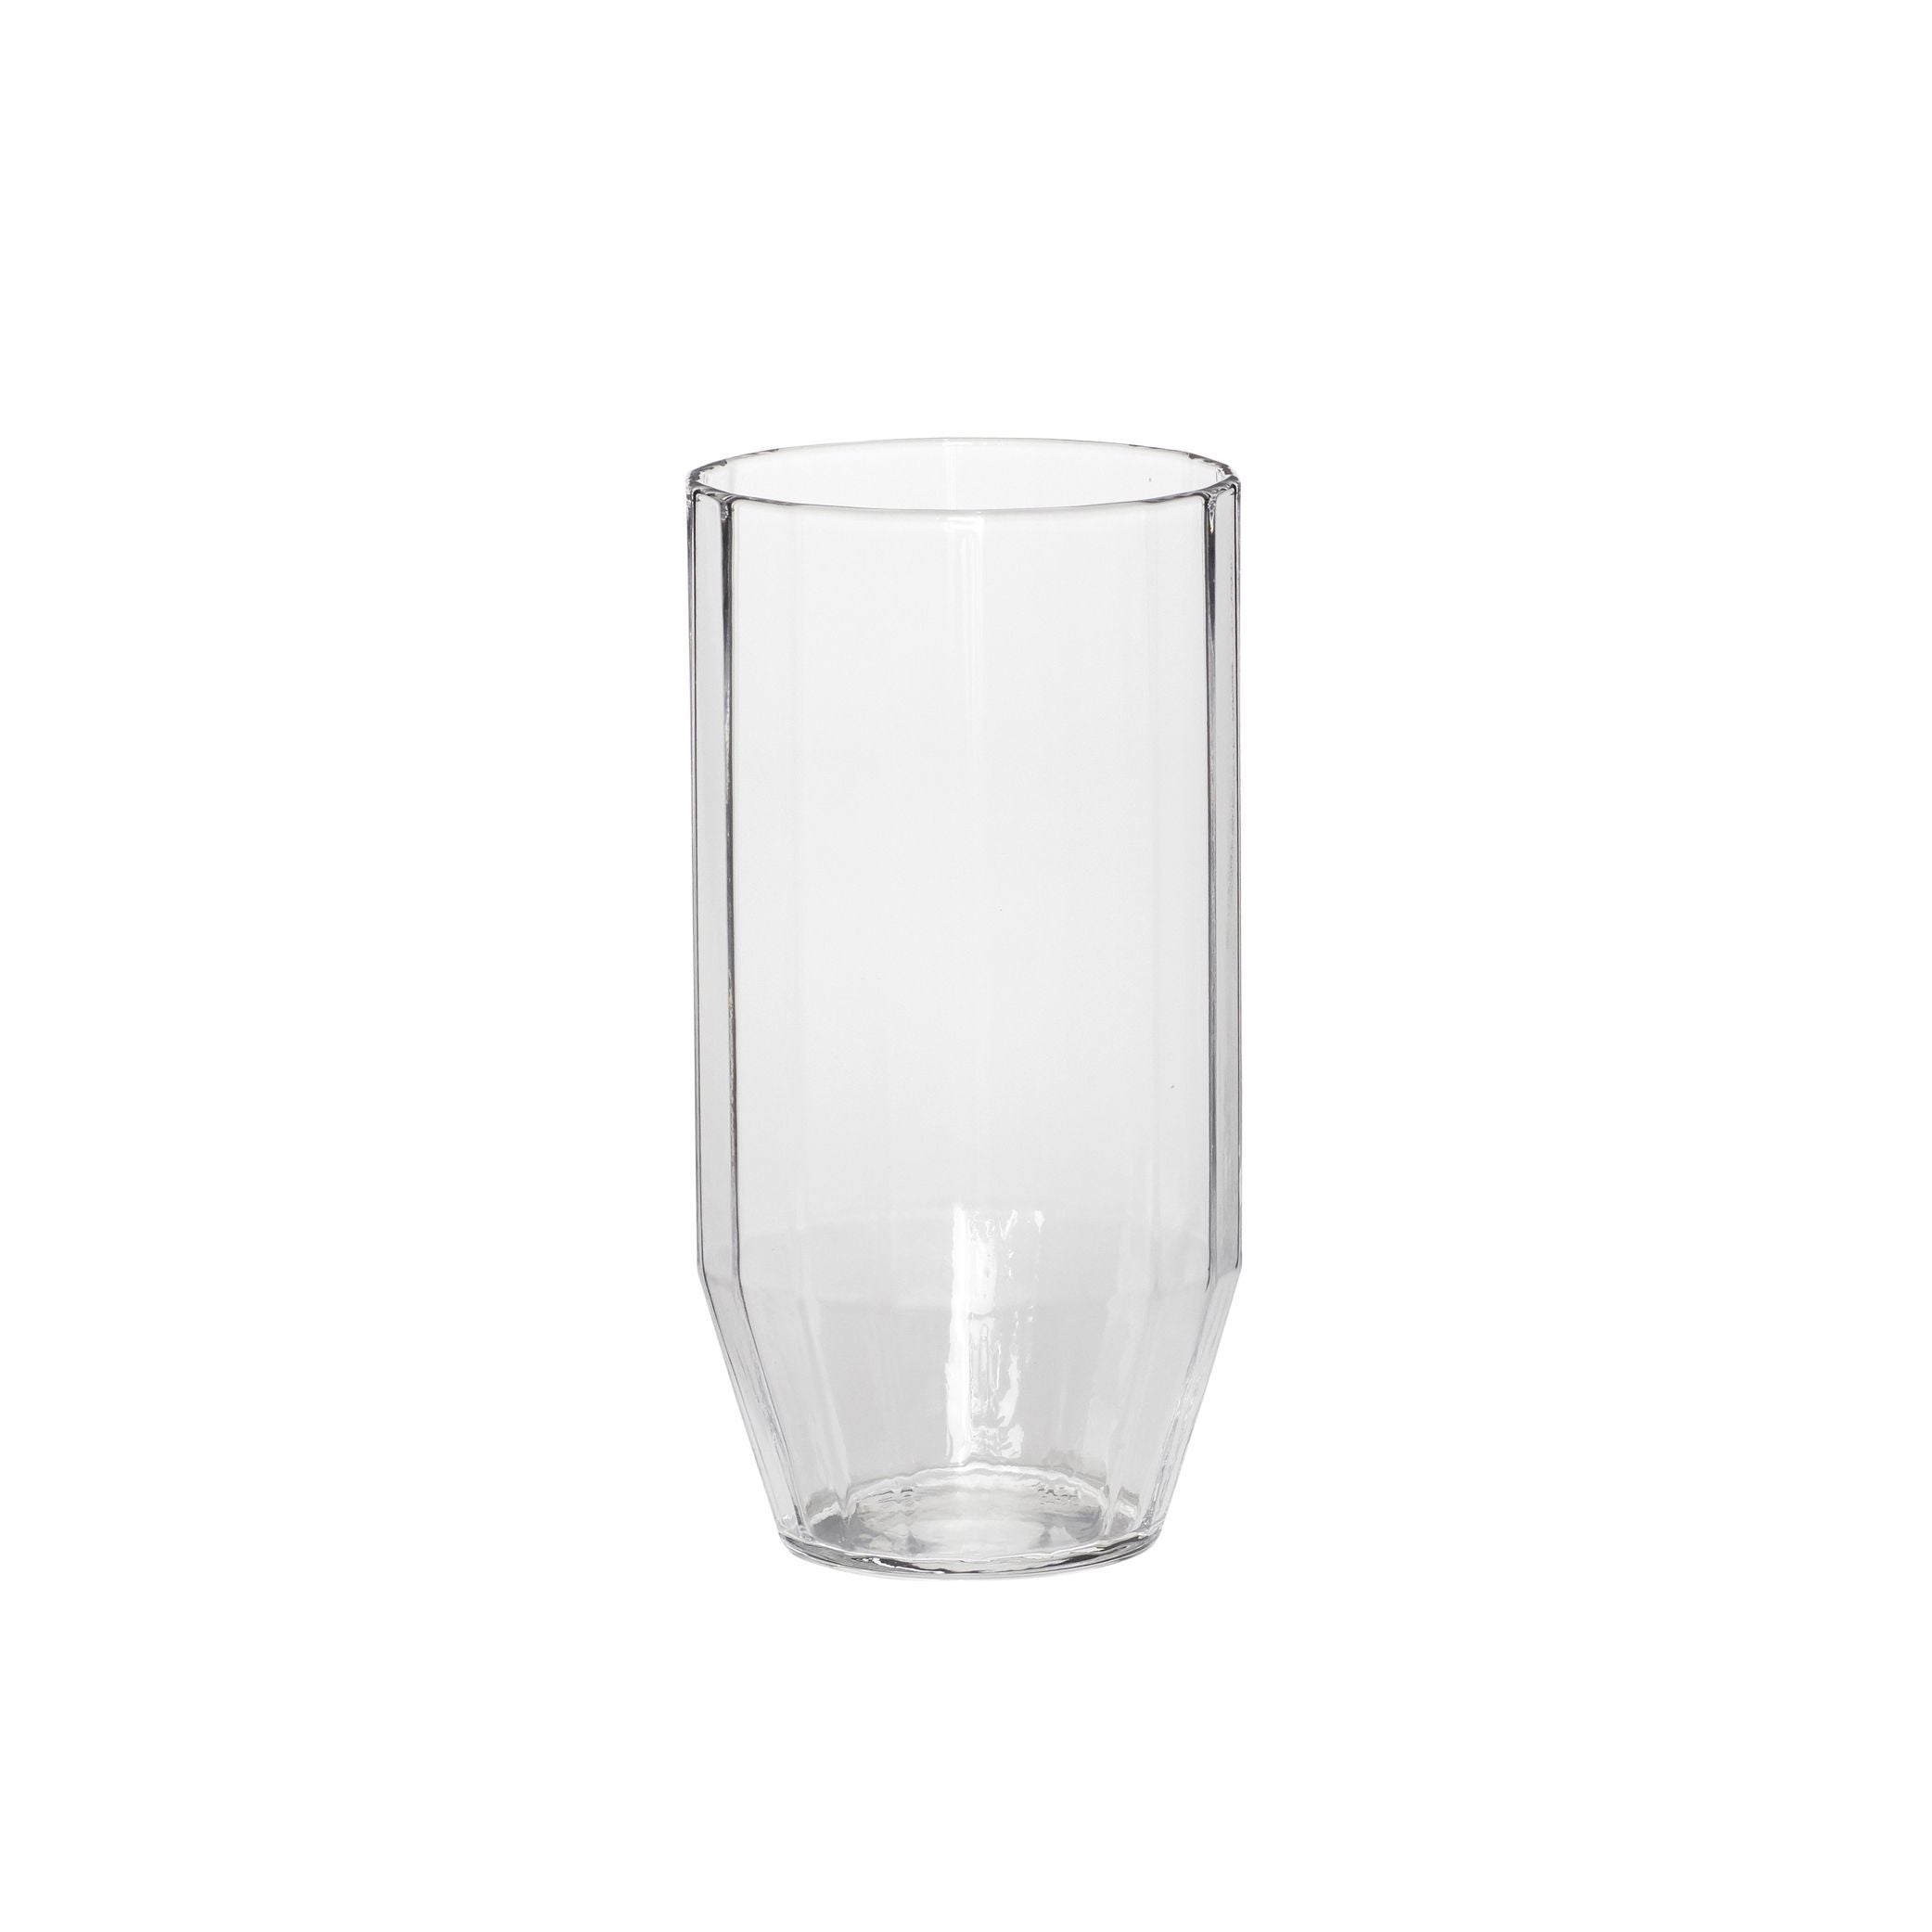 Hübsch Aster drinkglas, helder